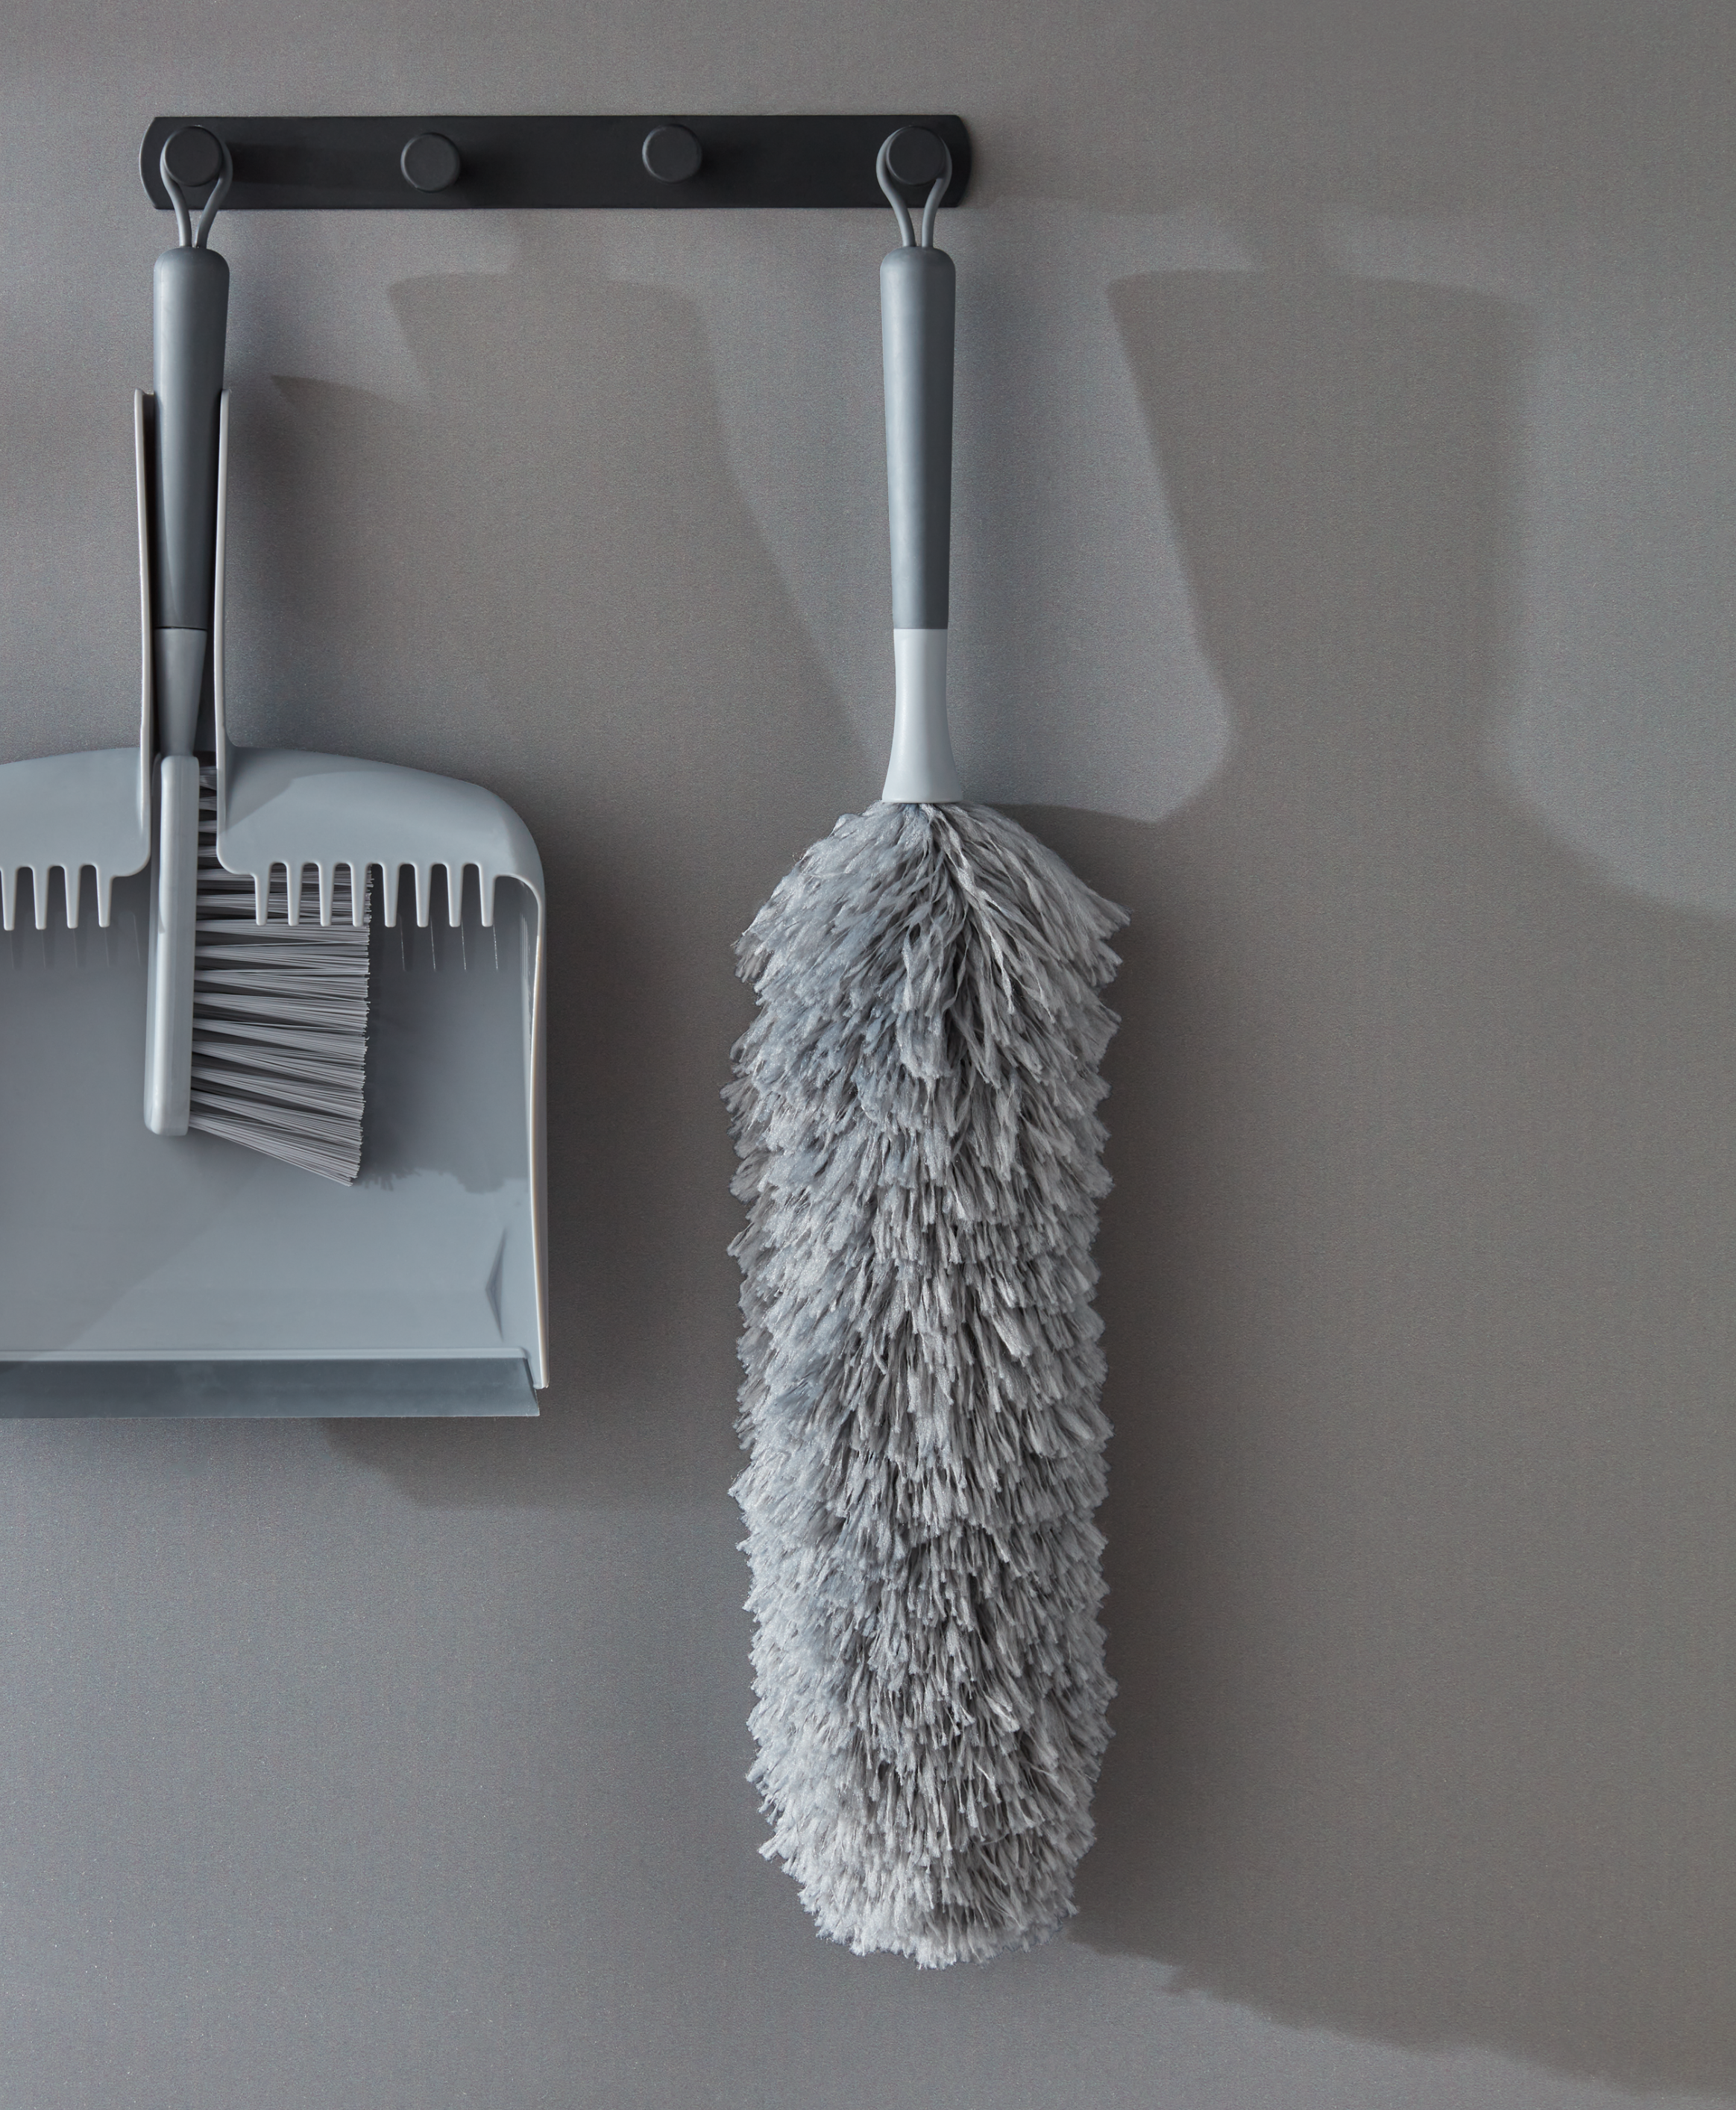 artículos de limpieza hogar, aerosol, cepillo, esponja. Productos